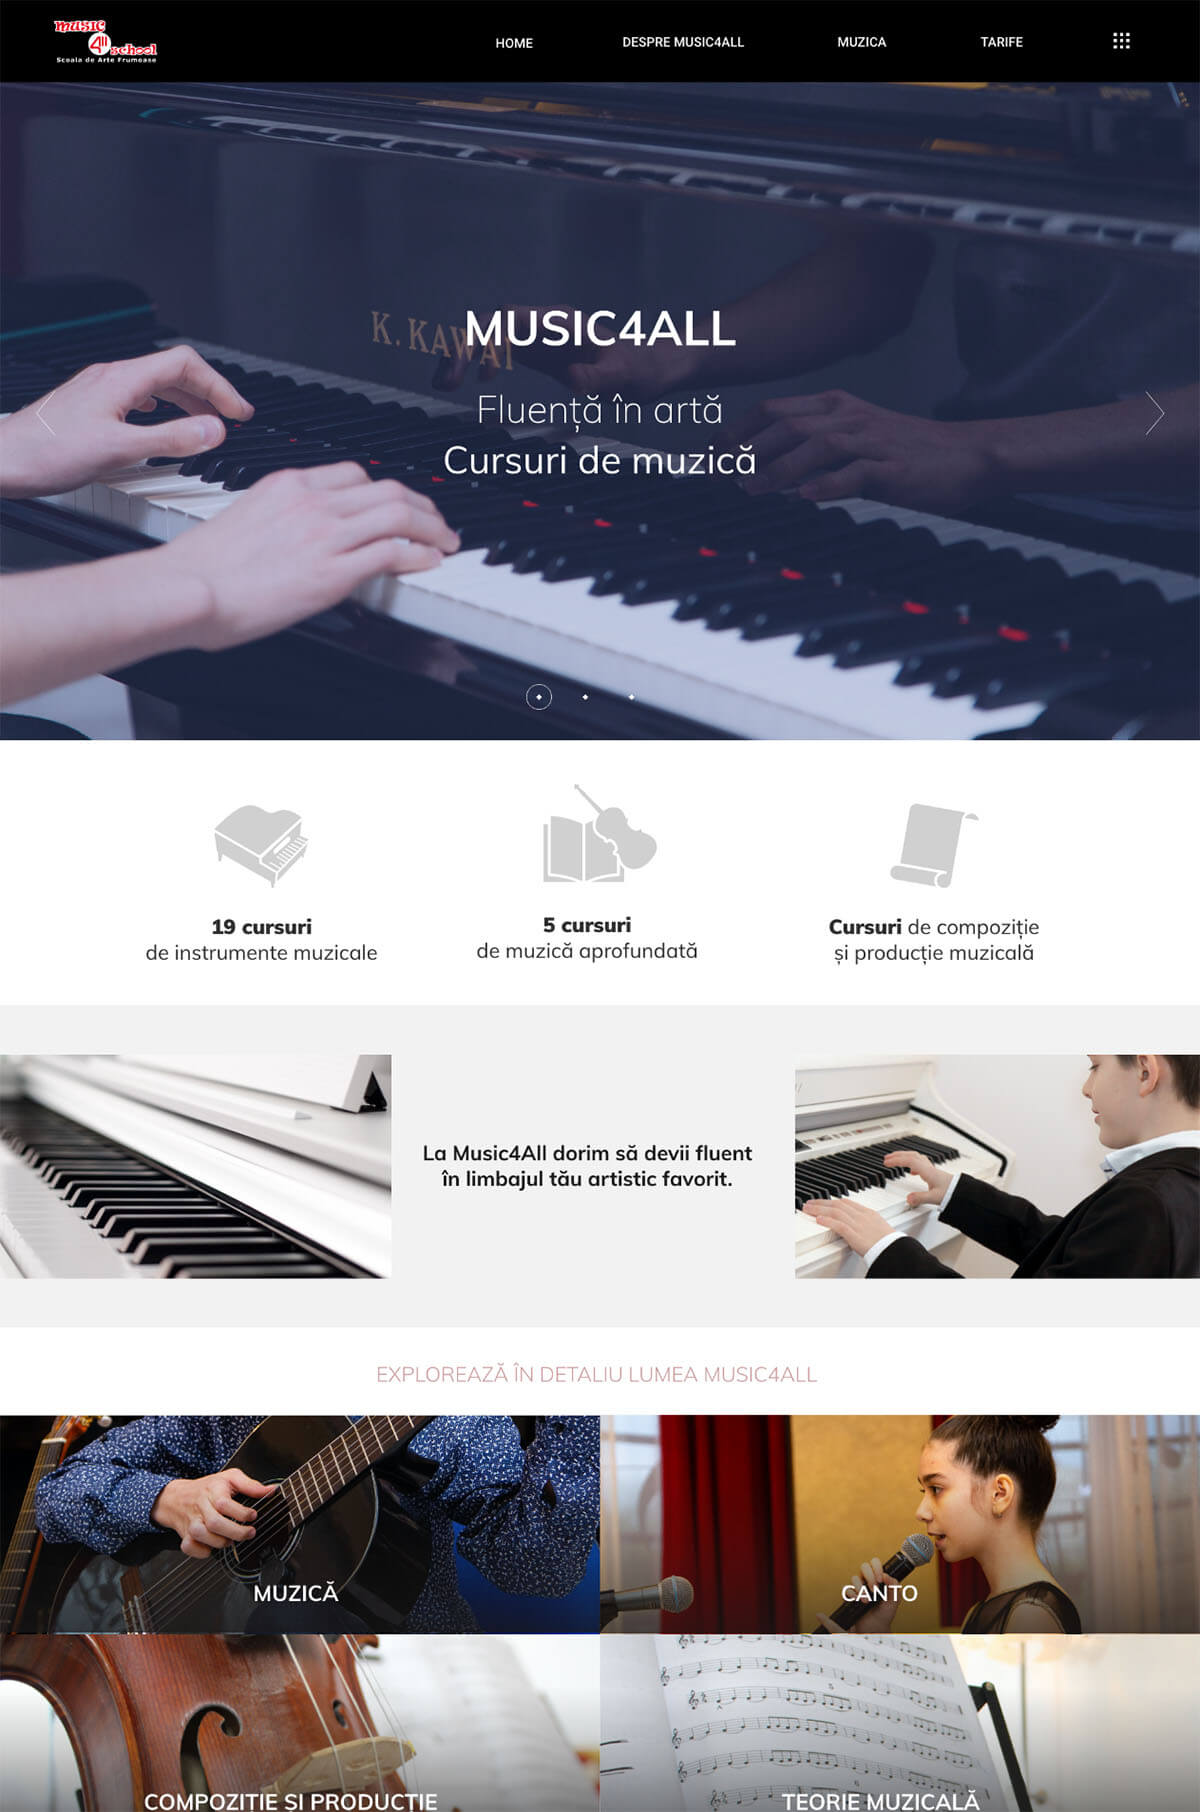 client music4all website content design development 2 min